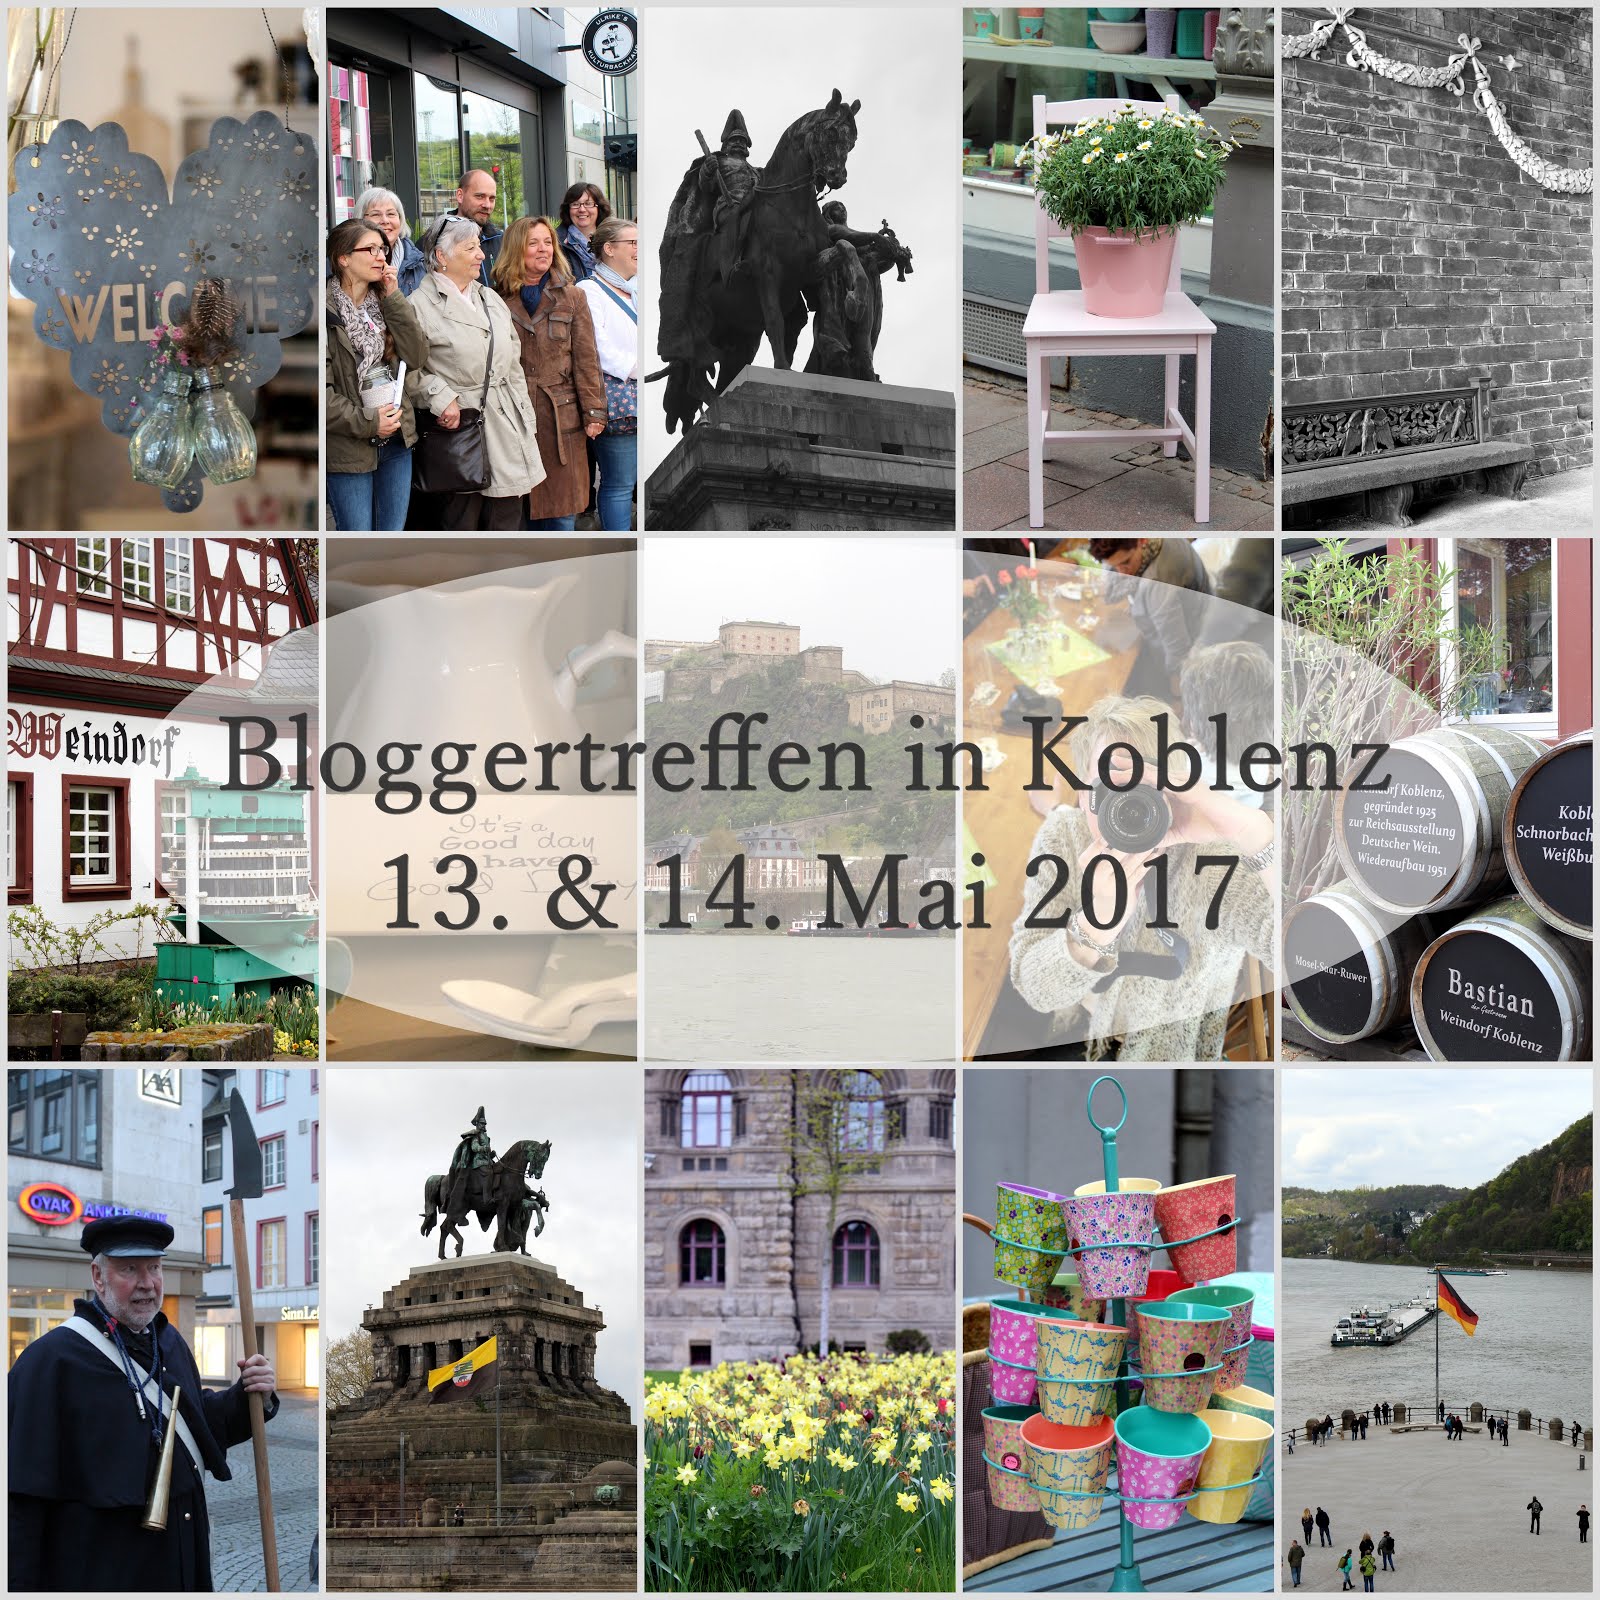 4. Bloggertreffen in Koblenz